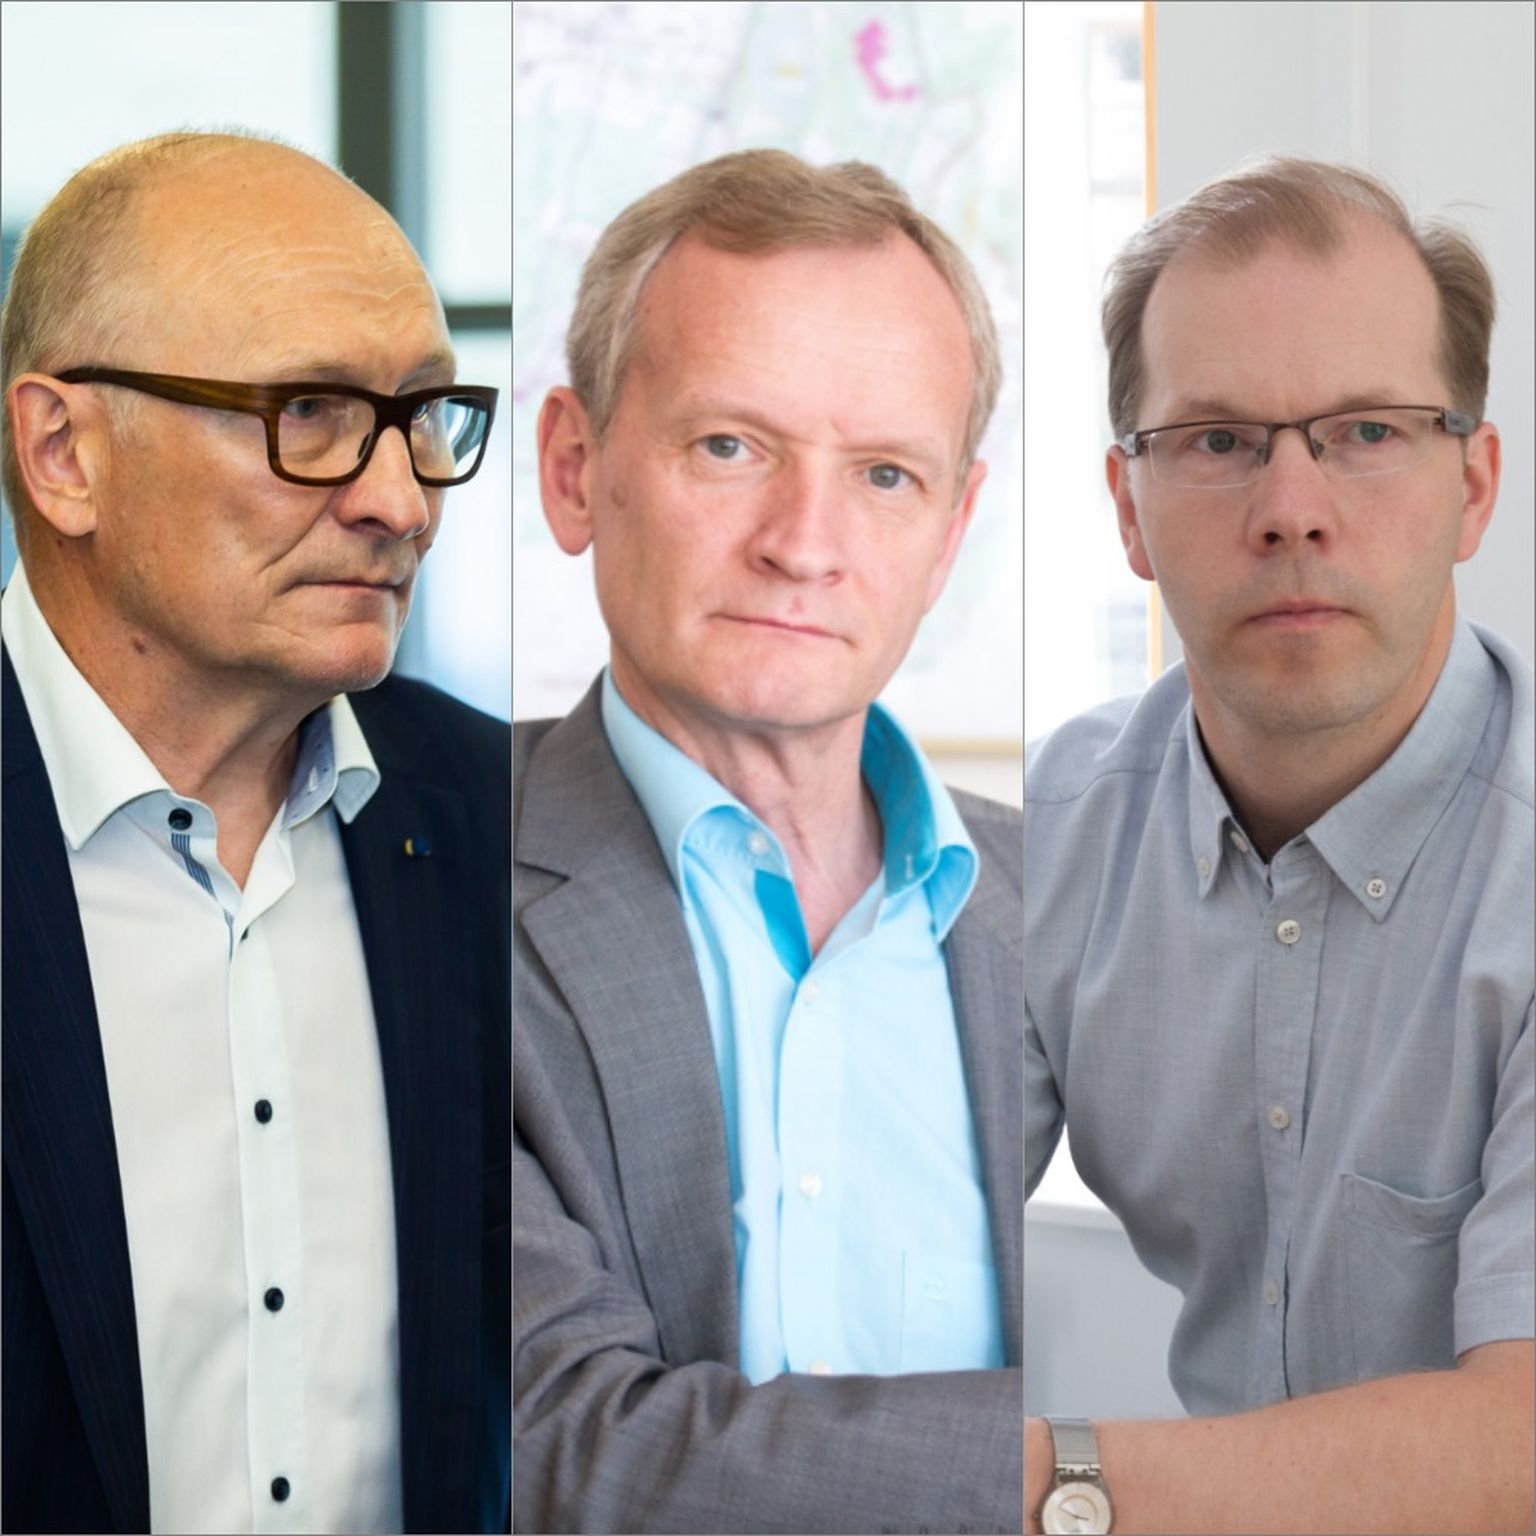 На пост ректора ТТУ претендуют три кандидата: Яак Аавиксоо, Тийт Ланд и Ярек Курнитски.